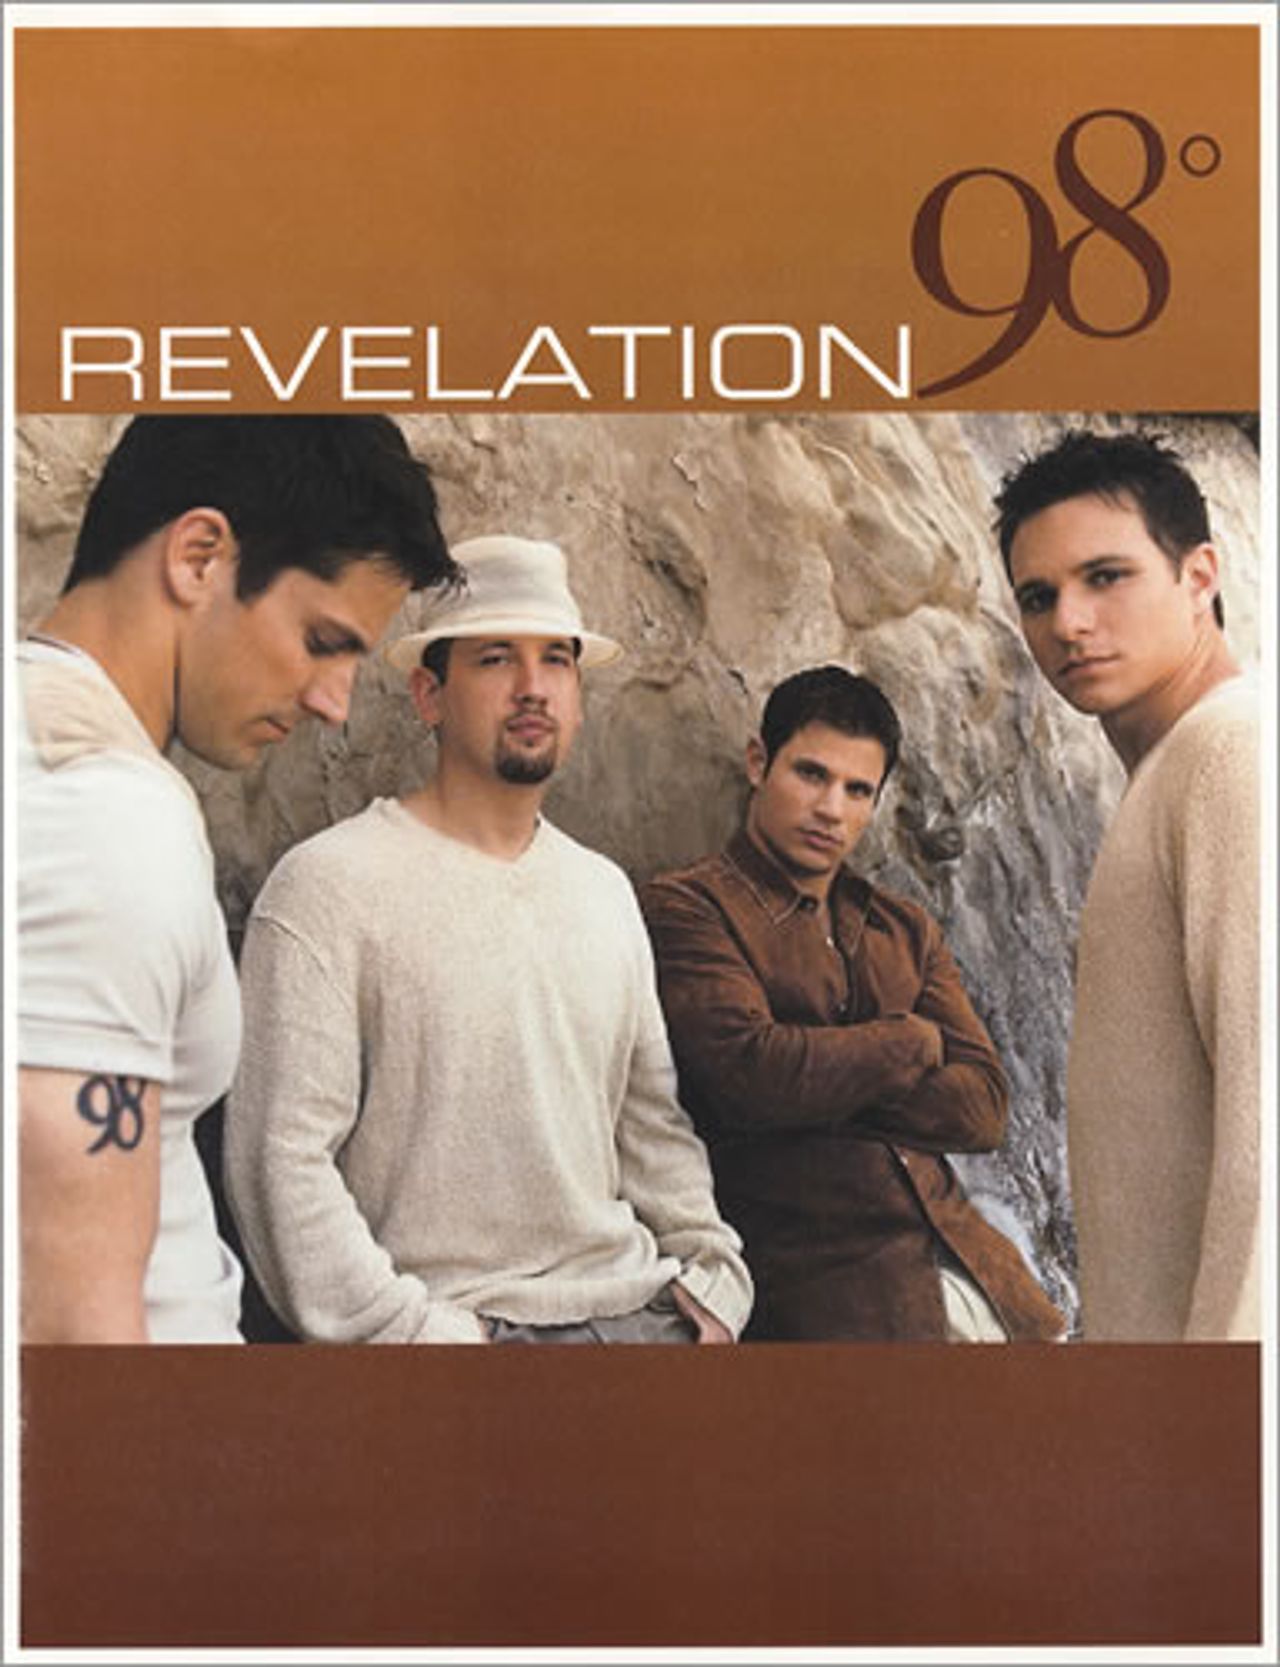 98 Degrees Revelation - press pack US Promo Press pack — RareVinyl.com